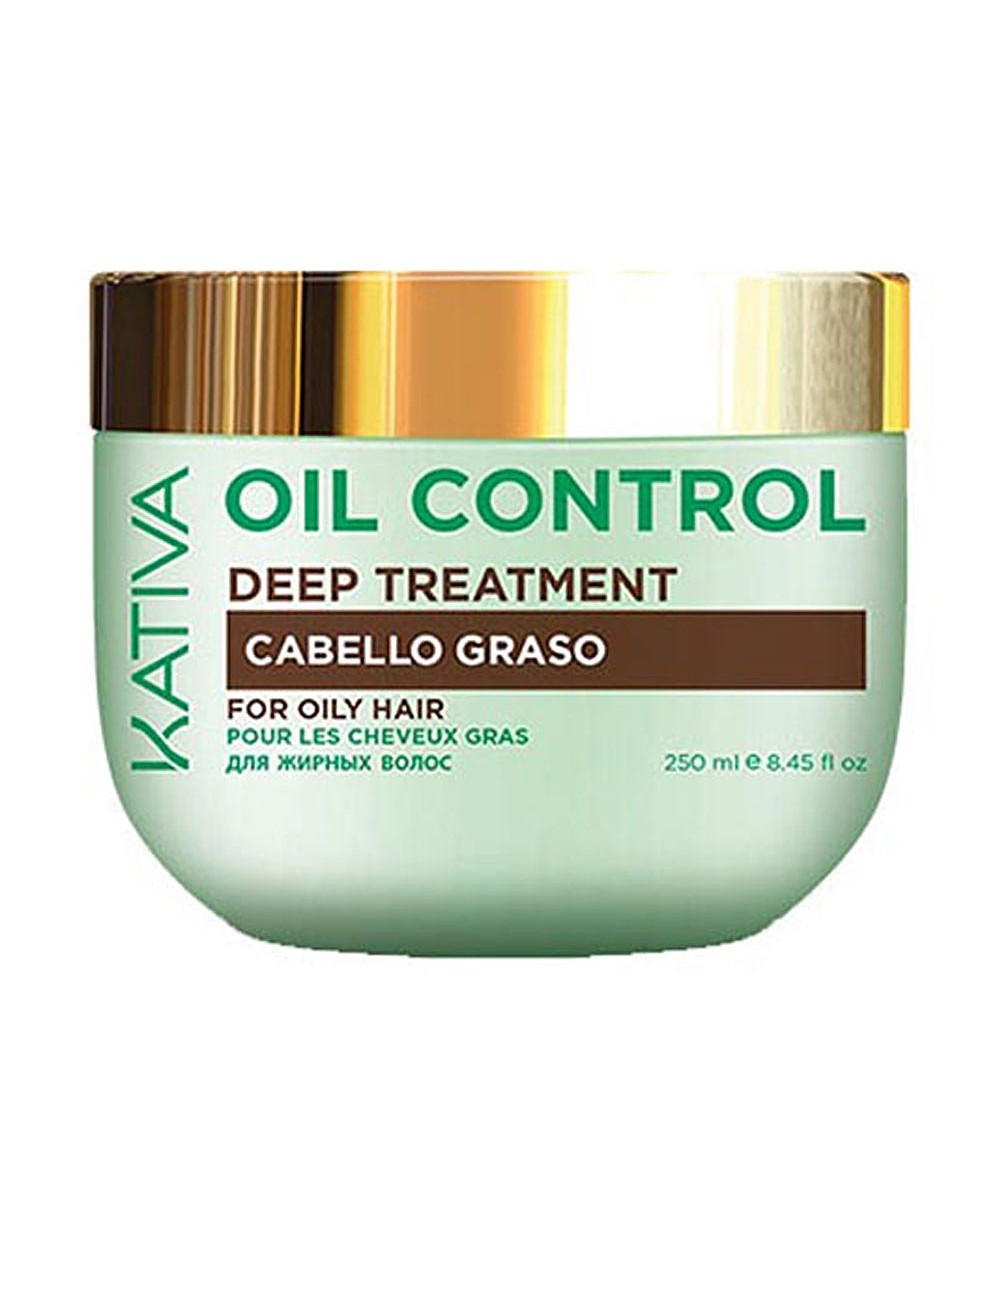 OIL CONTROL deep treatment Cheveux gras